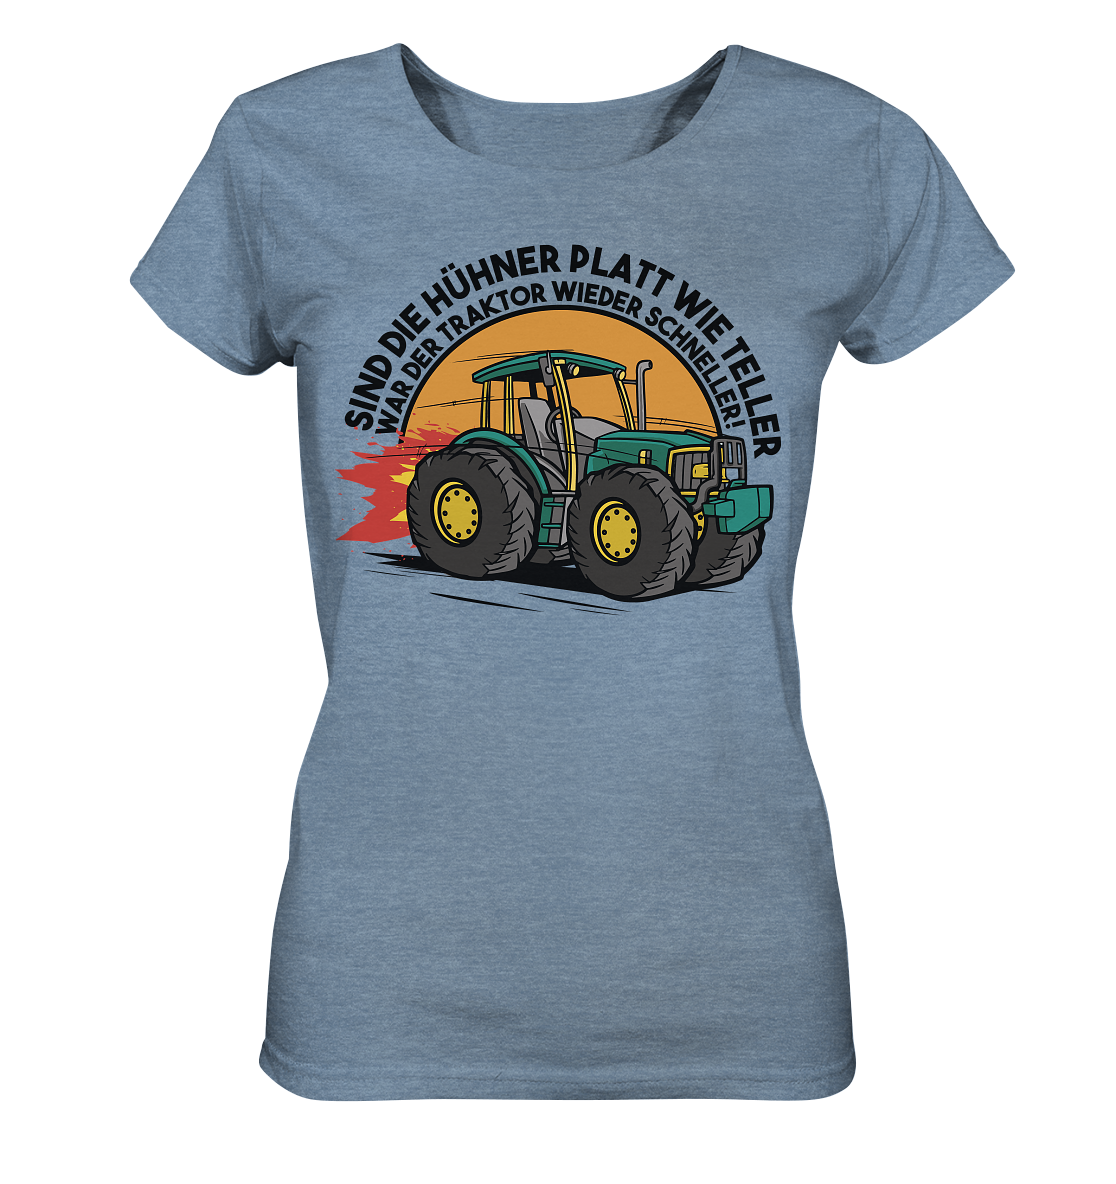 Sind die Hühner platt wie Teller ,war der Traktor wieder schneller - Ladies Organic Shirt (meliert)